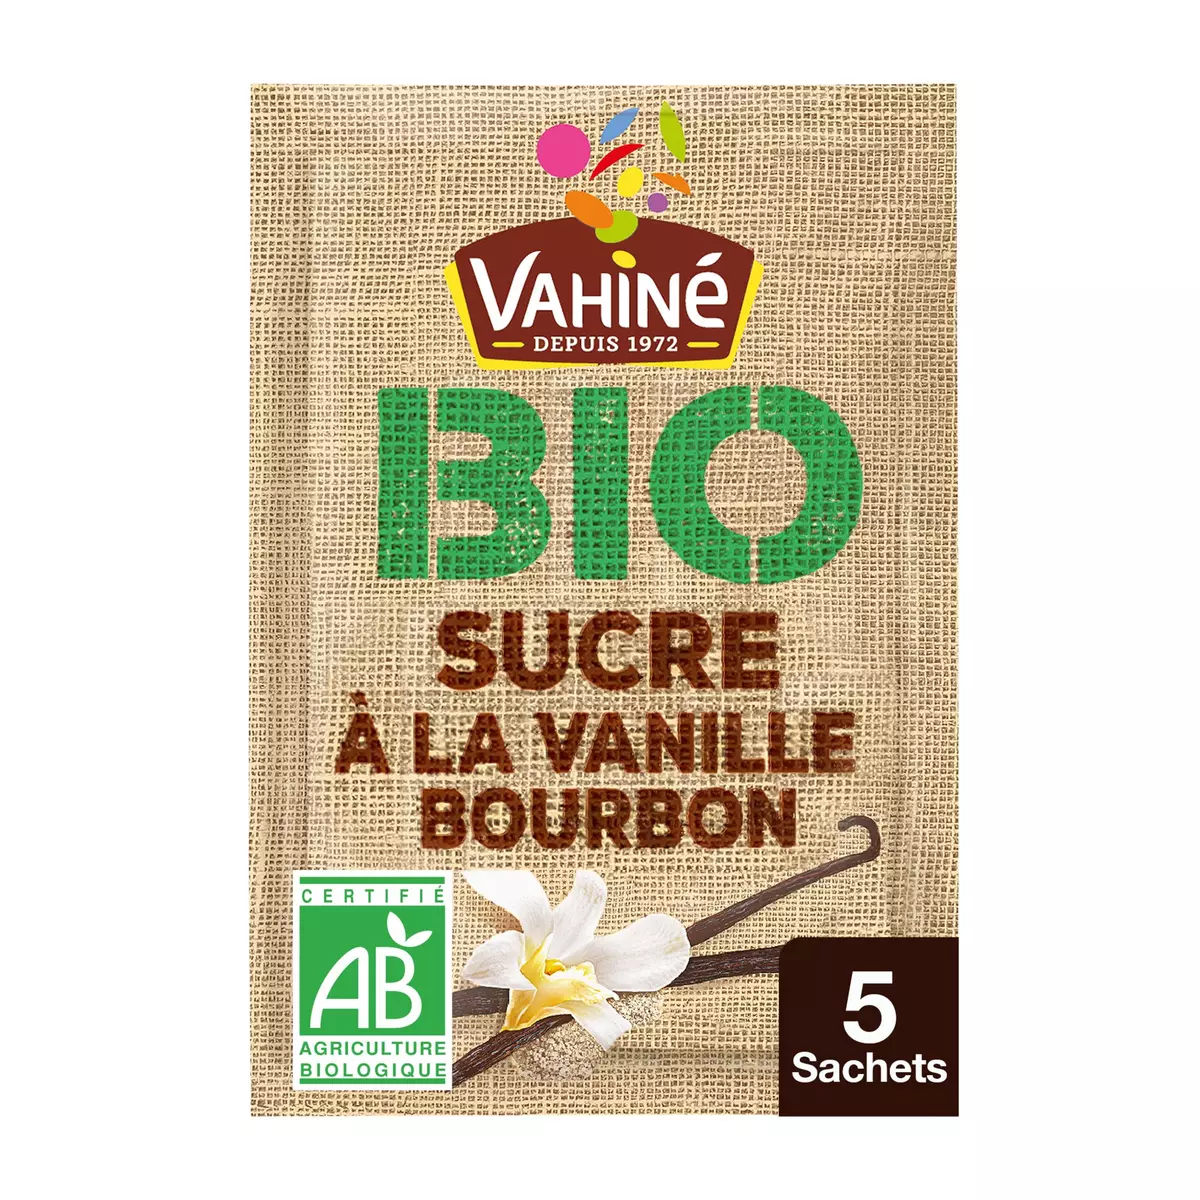 Vanille en poudre de Madagascar, Vahiné (5 g)